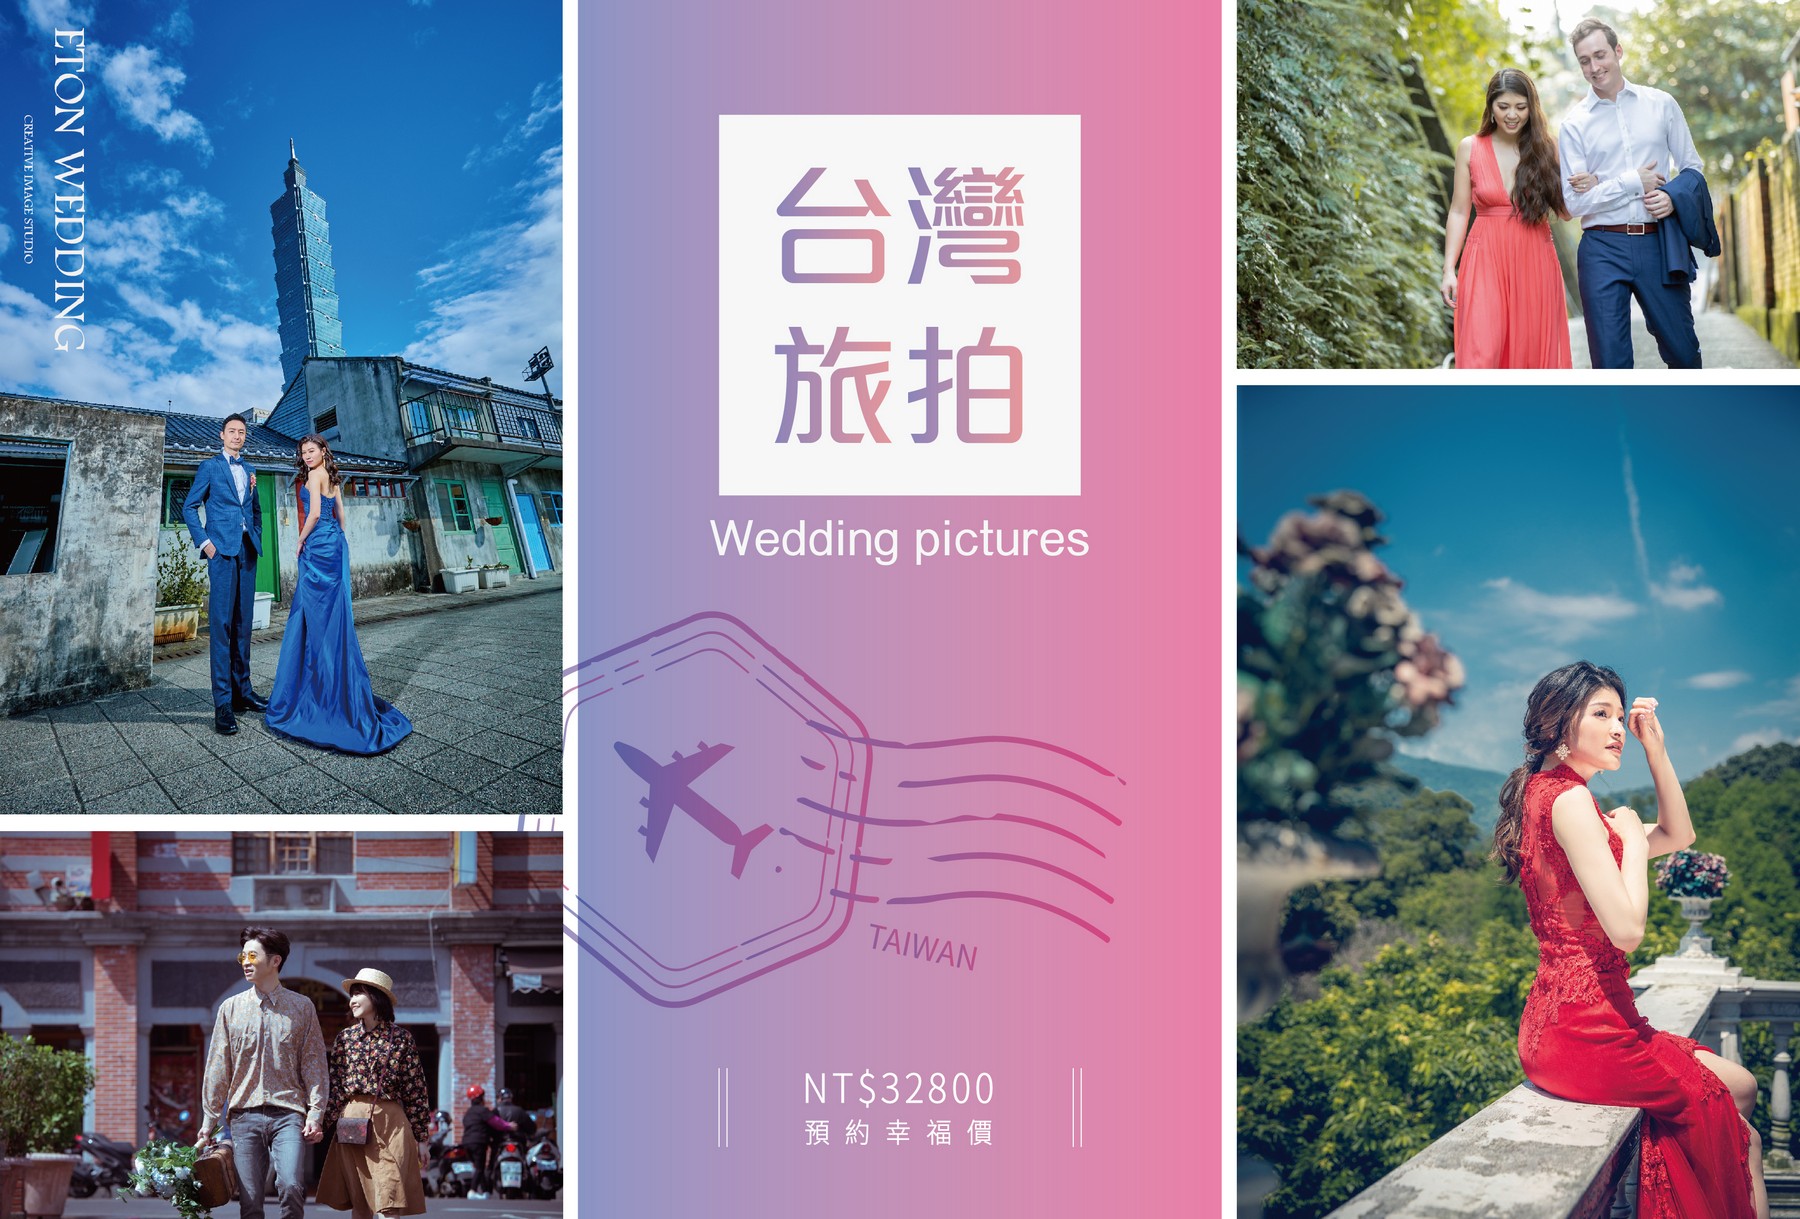 台灣拍婚紗,海外婚紗,旅拍婚紗,台灣婚紗照,個人寫真,人像攝影,藝術形象照,沙龍照